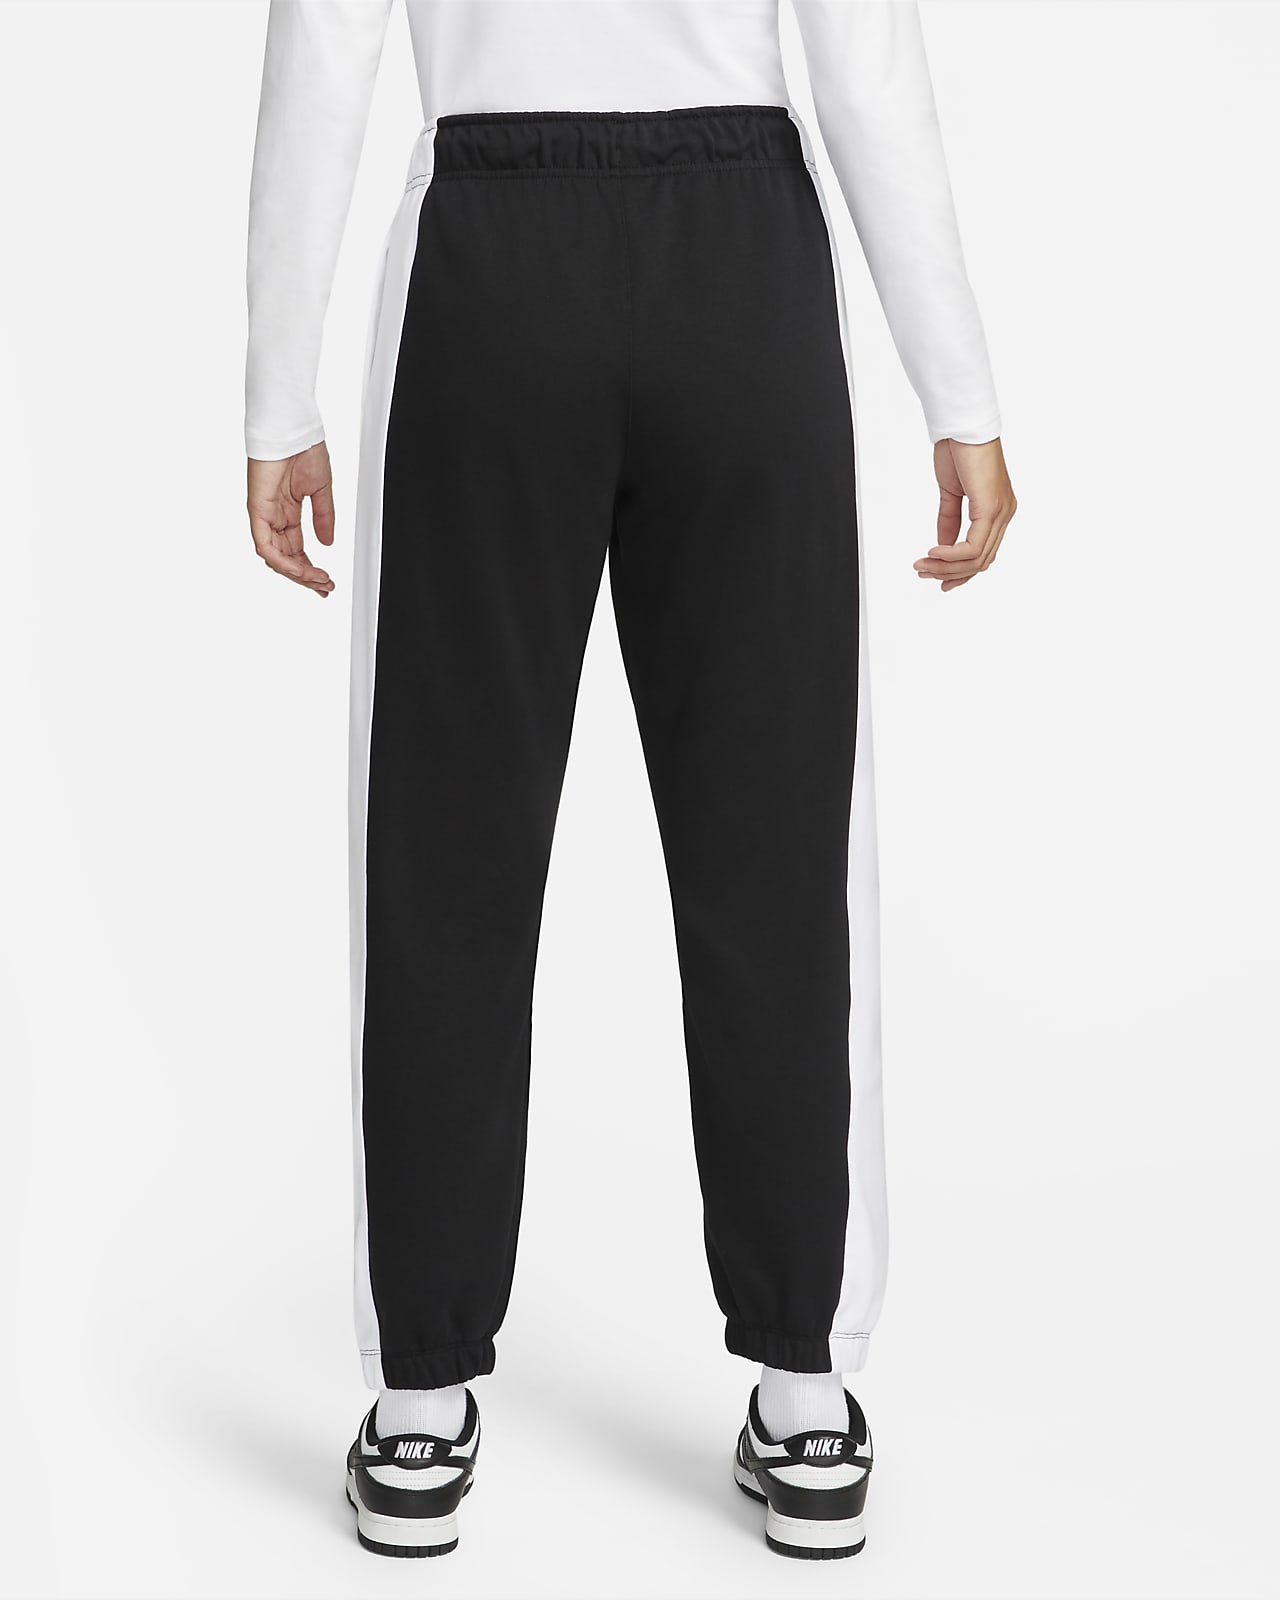 Nike Sportswear Team Nike Women's Fleece Pants